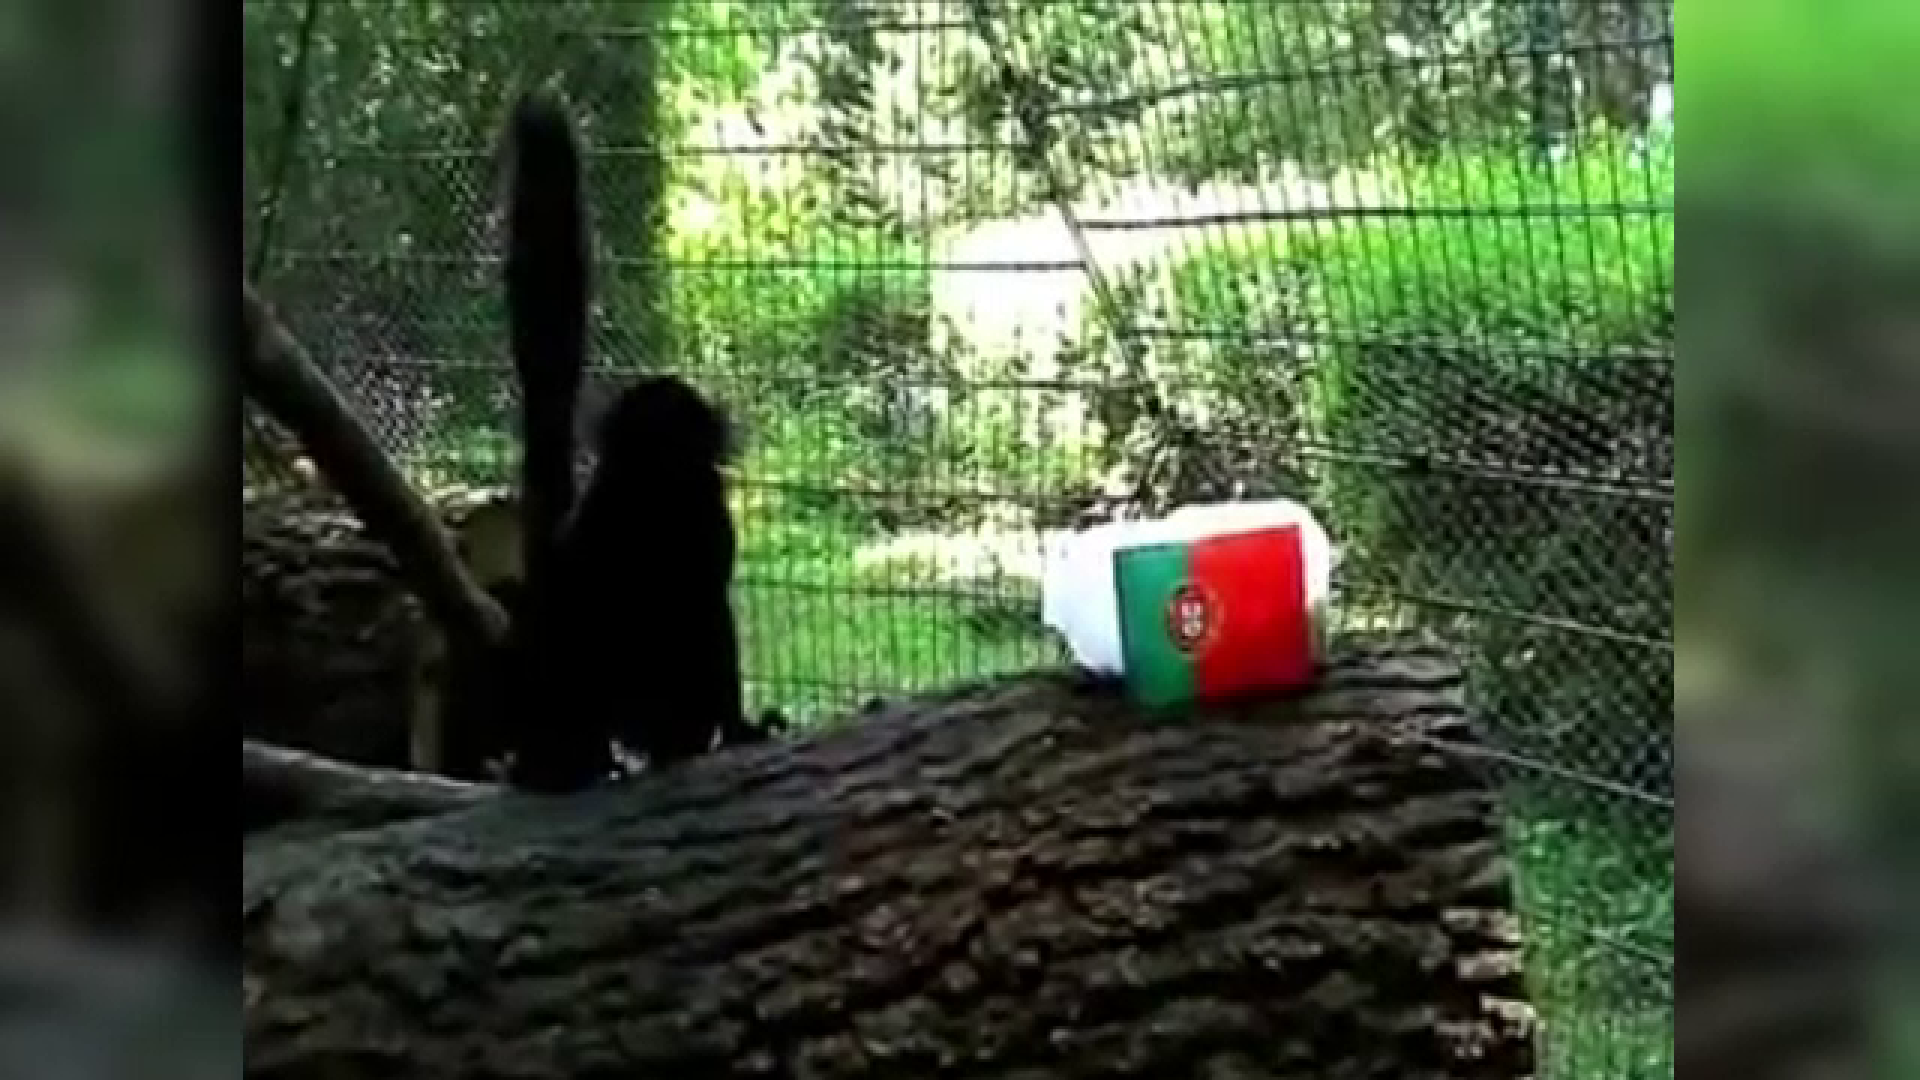 lemuri